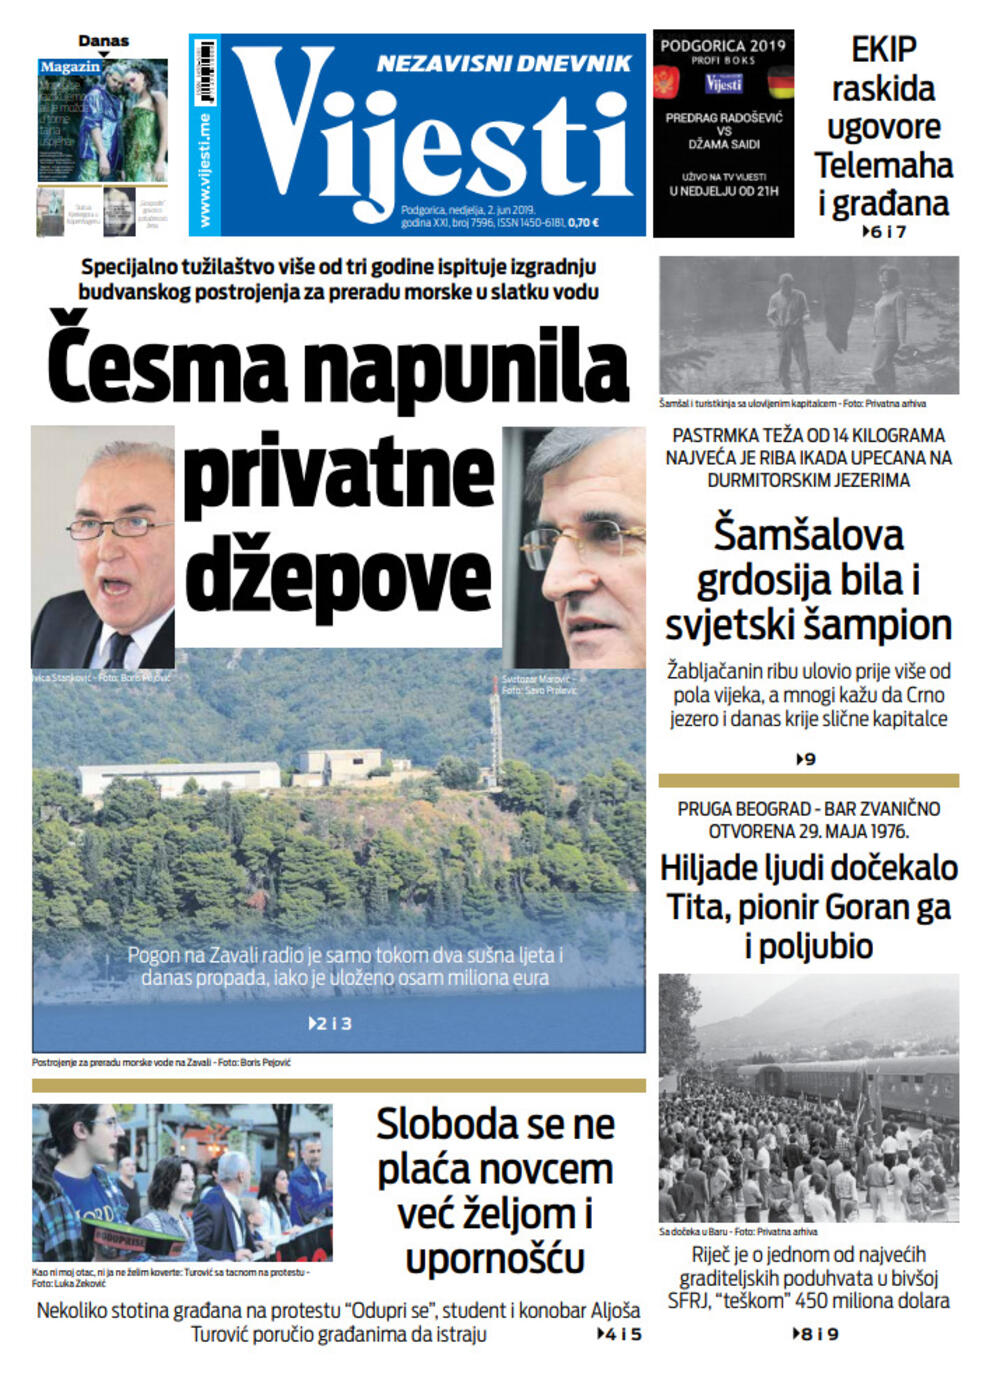 Naslovna strana "Vijesti" za 2. jun, Foto: Vijesti